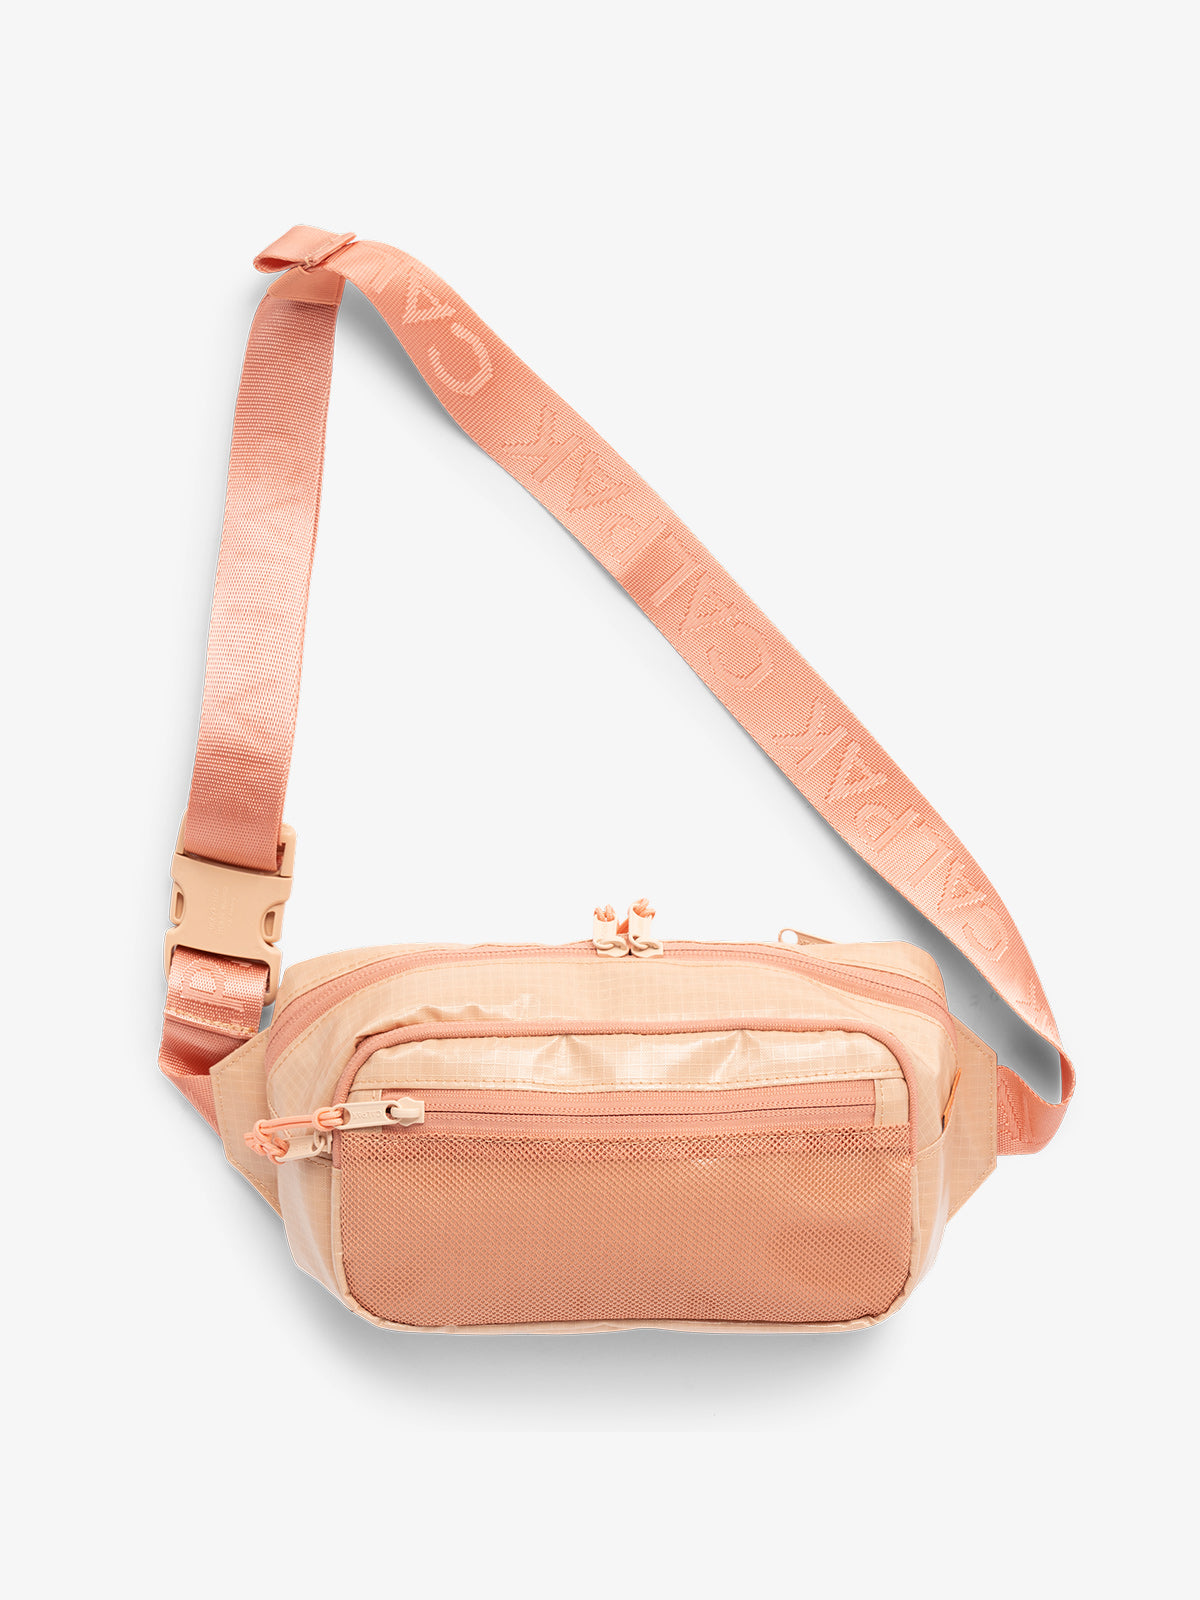 Terra hiking belt  bag with adjustable nylon strap in orange